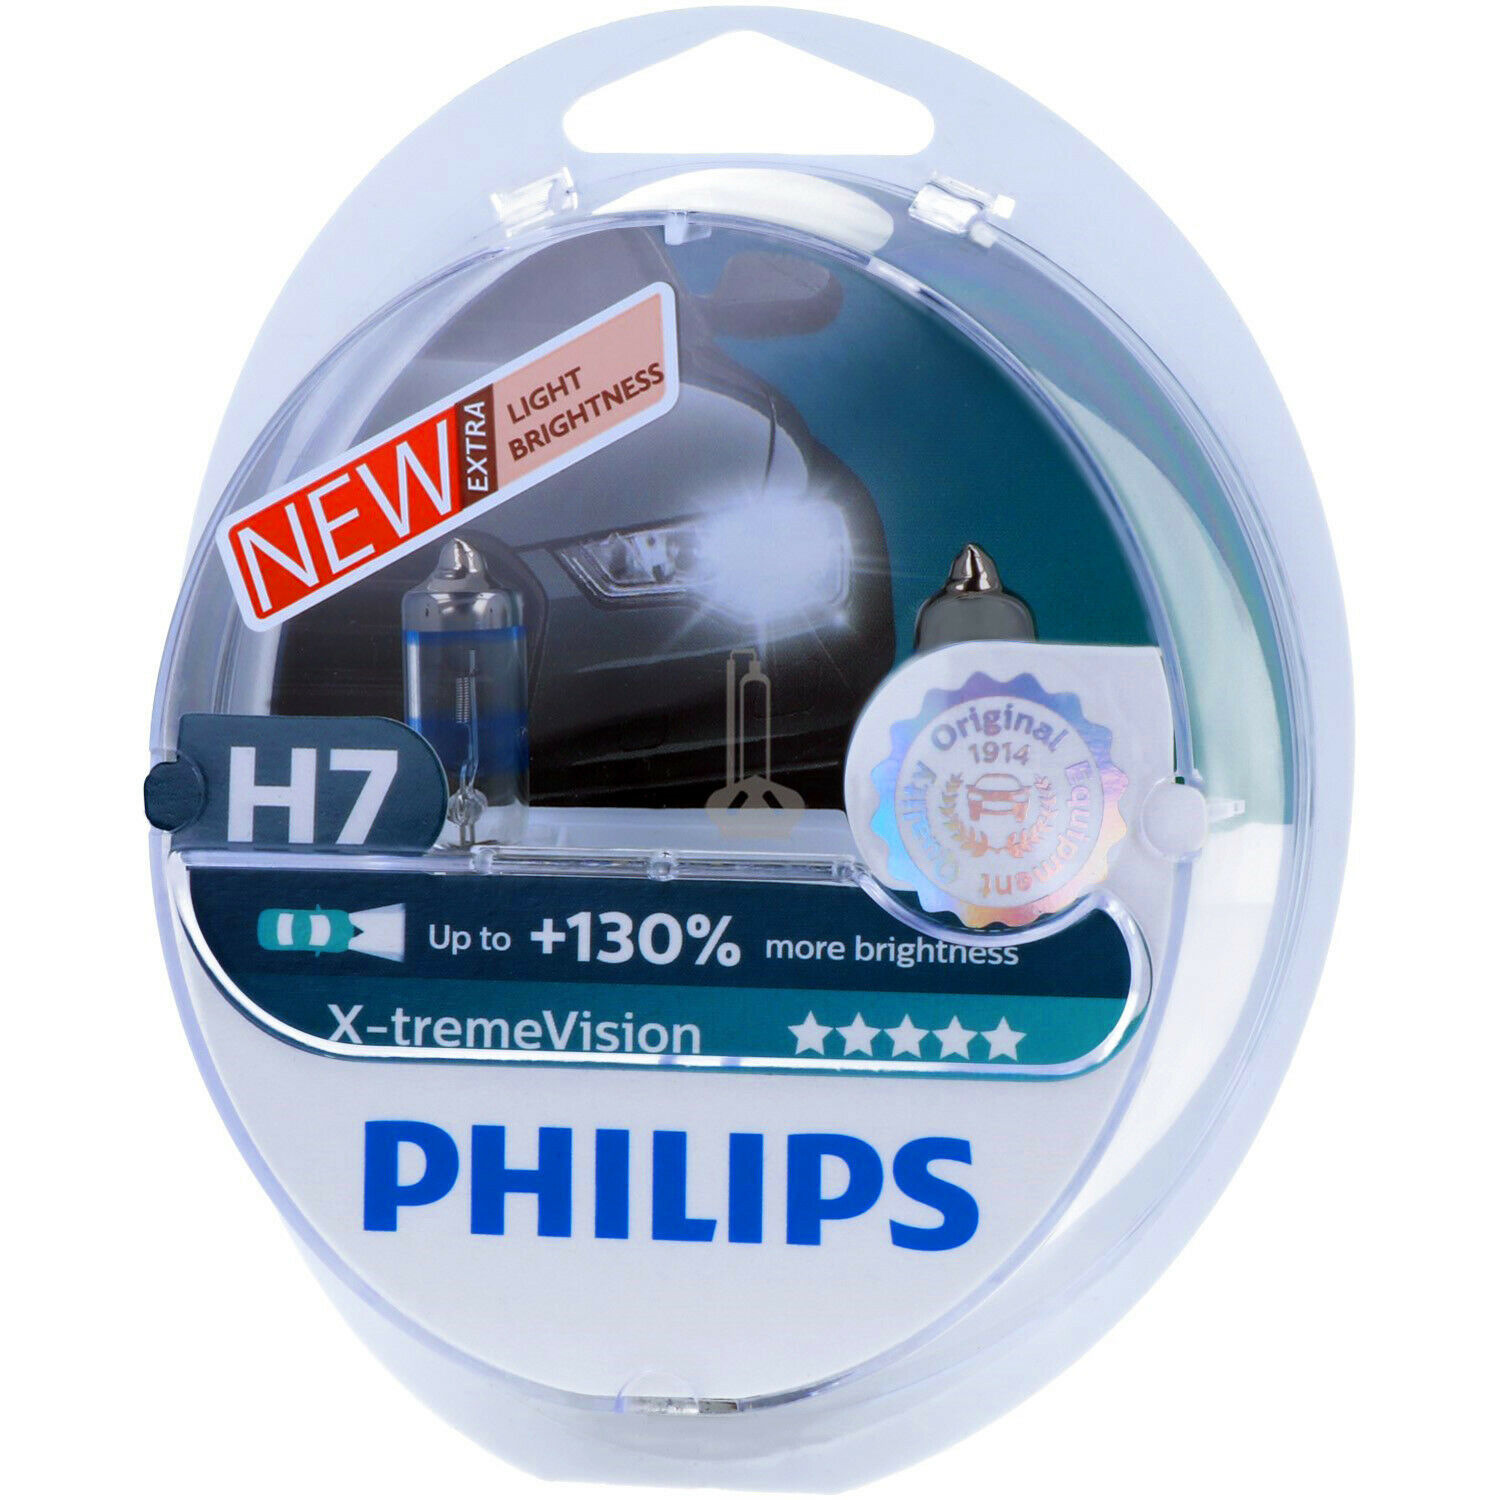 Филипс 130. Лампа н4 Филипс +130. Philips x-TREMEVISION +130%. Лампочки Филипс h7 +130. Лампы Philips x-treme Vision h1.